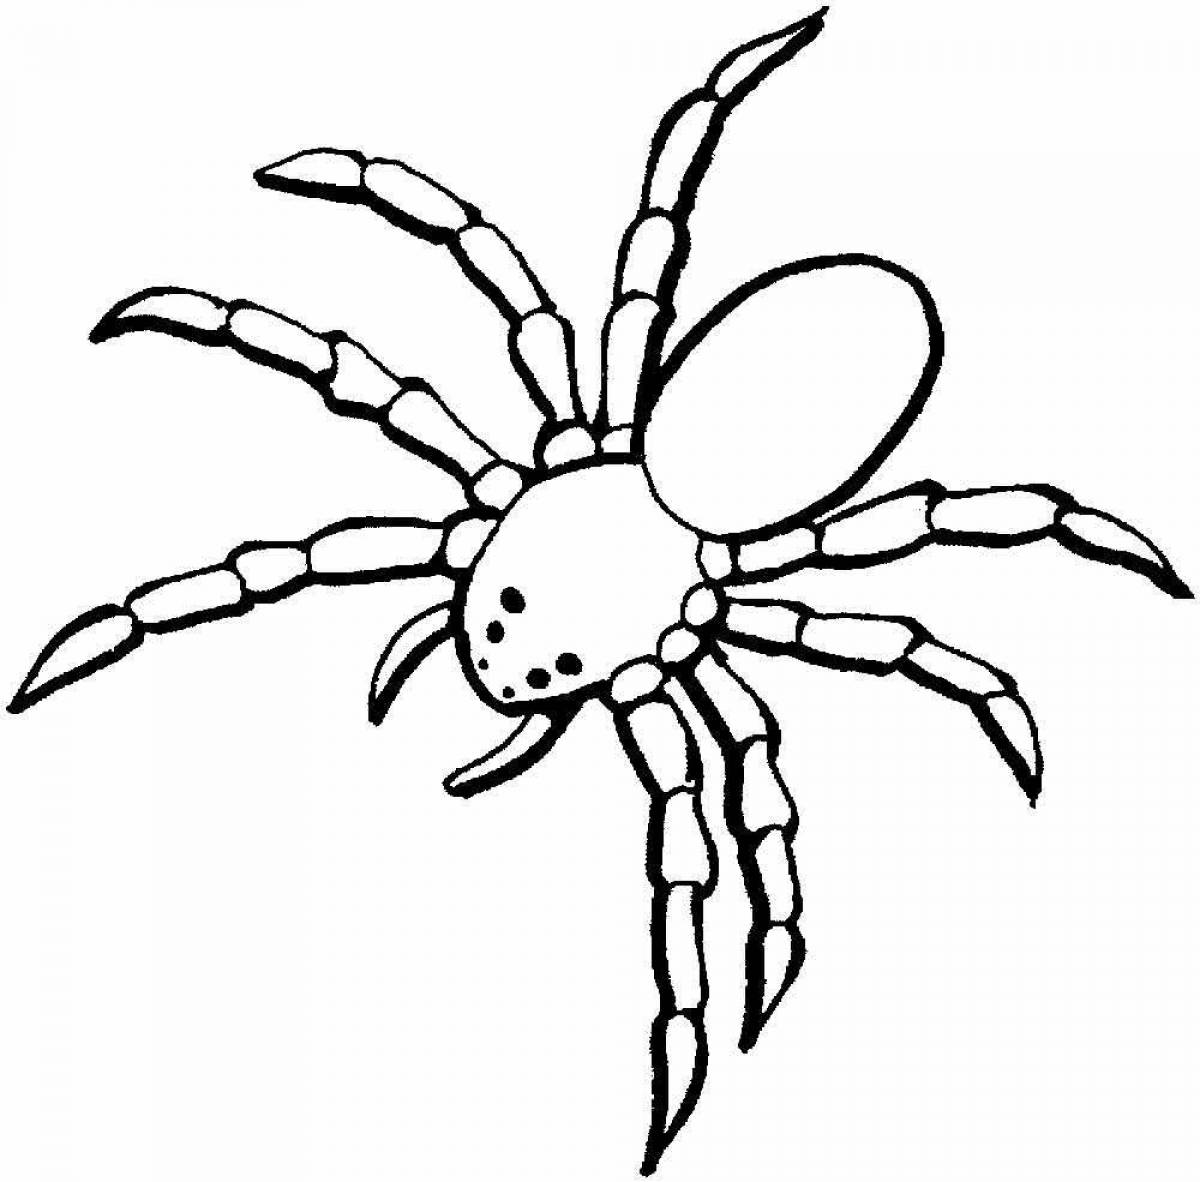 Joyful spider coloring for kids